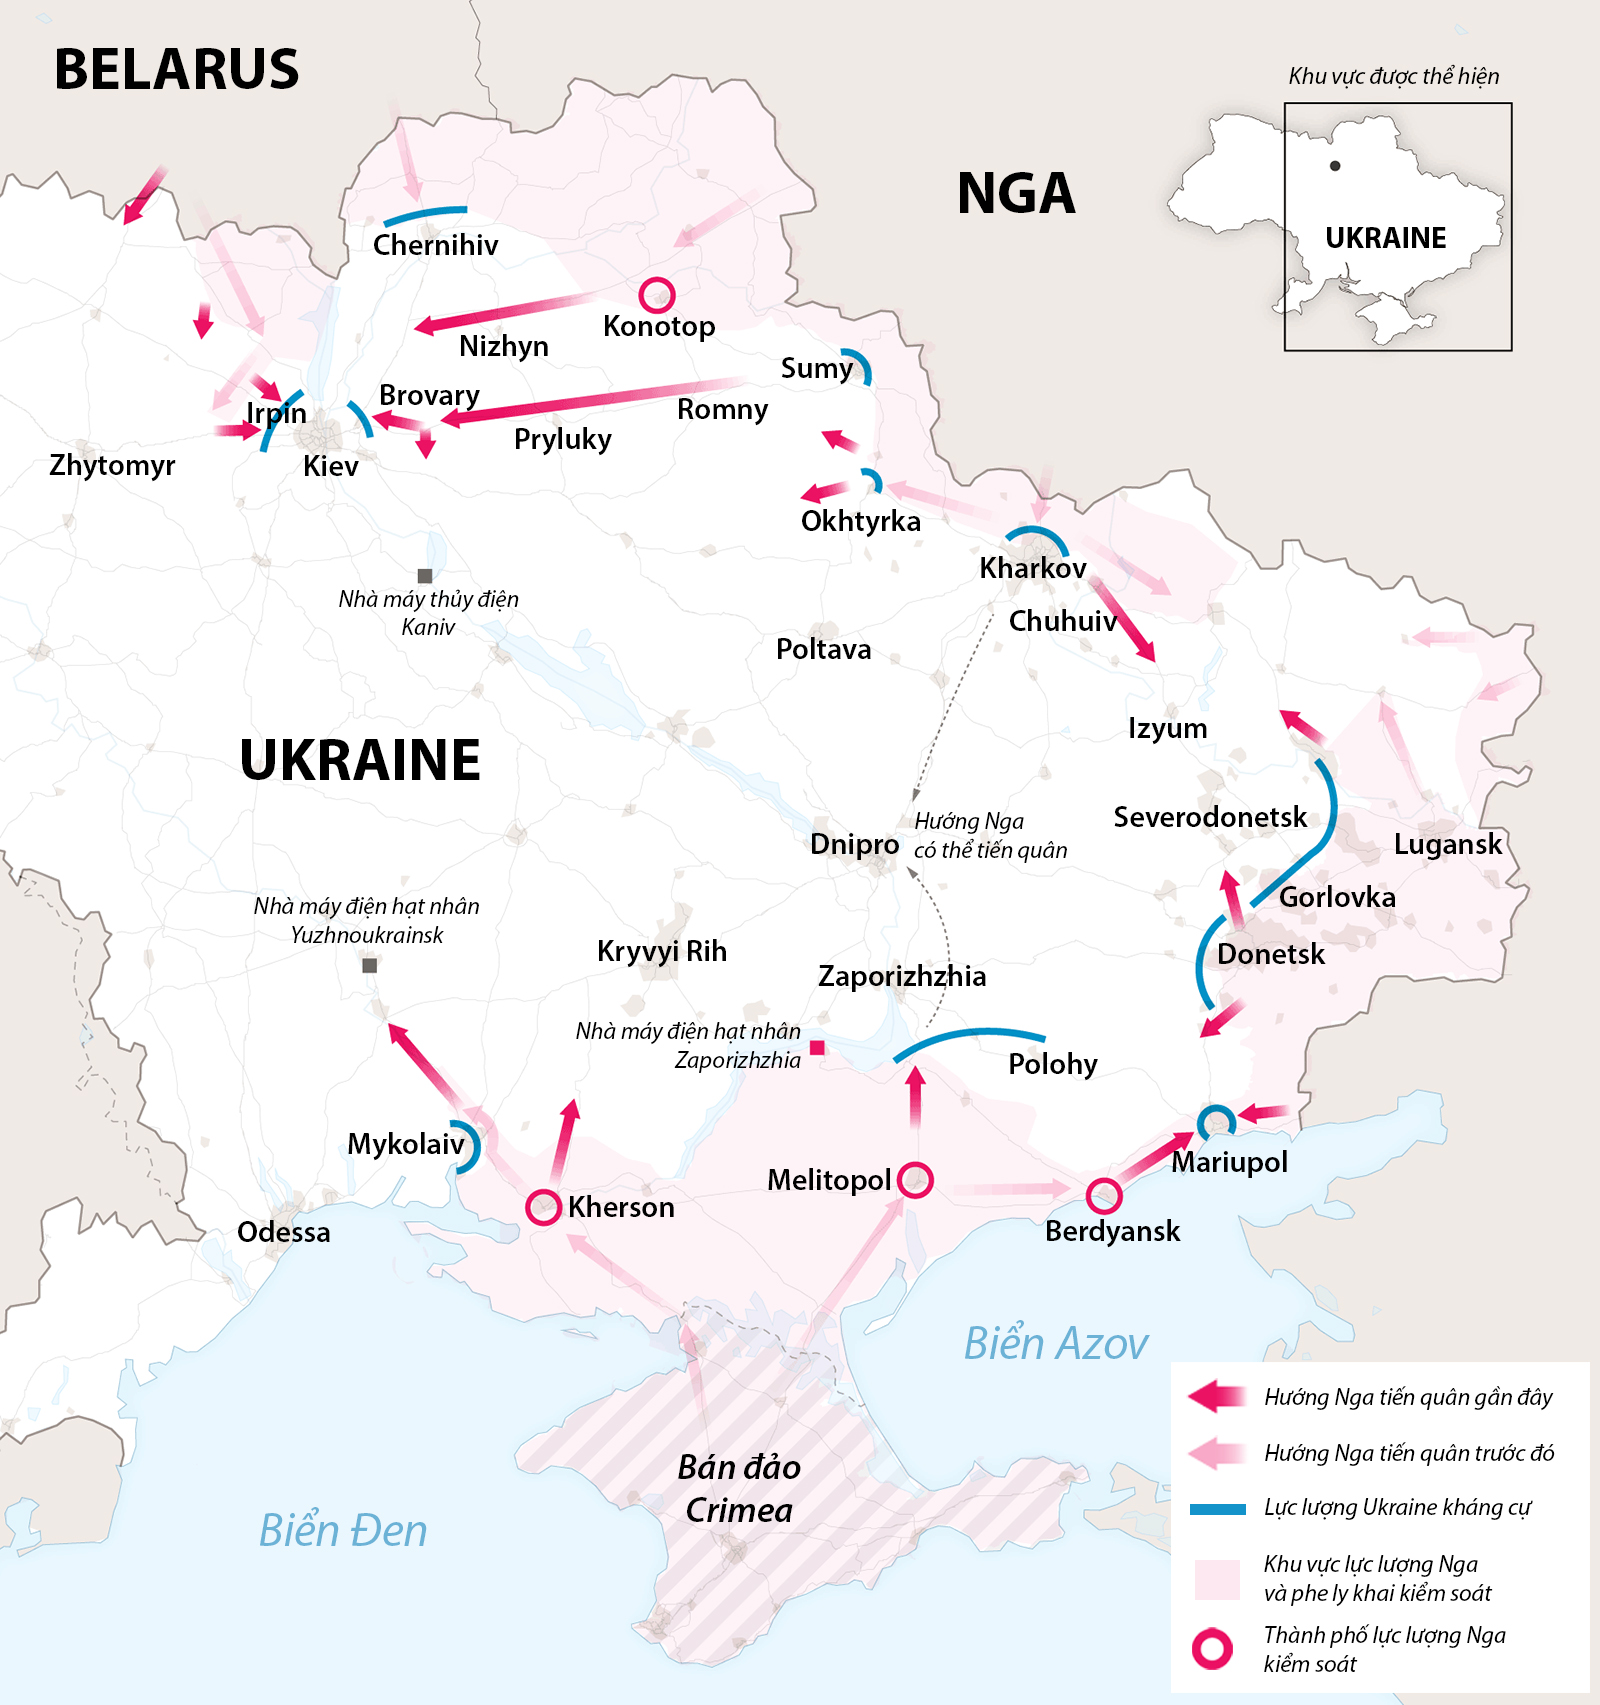 Hướng Nga tiến quân trong hai tuần chiến dịch tại Ukraine. Đồ họa: NY Times. 